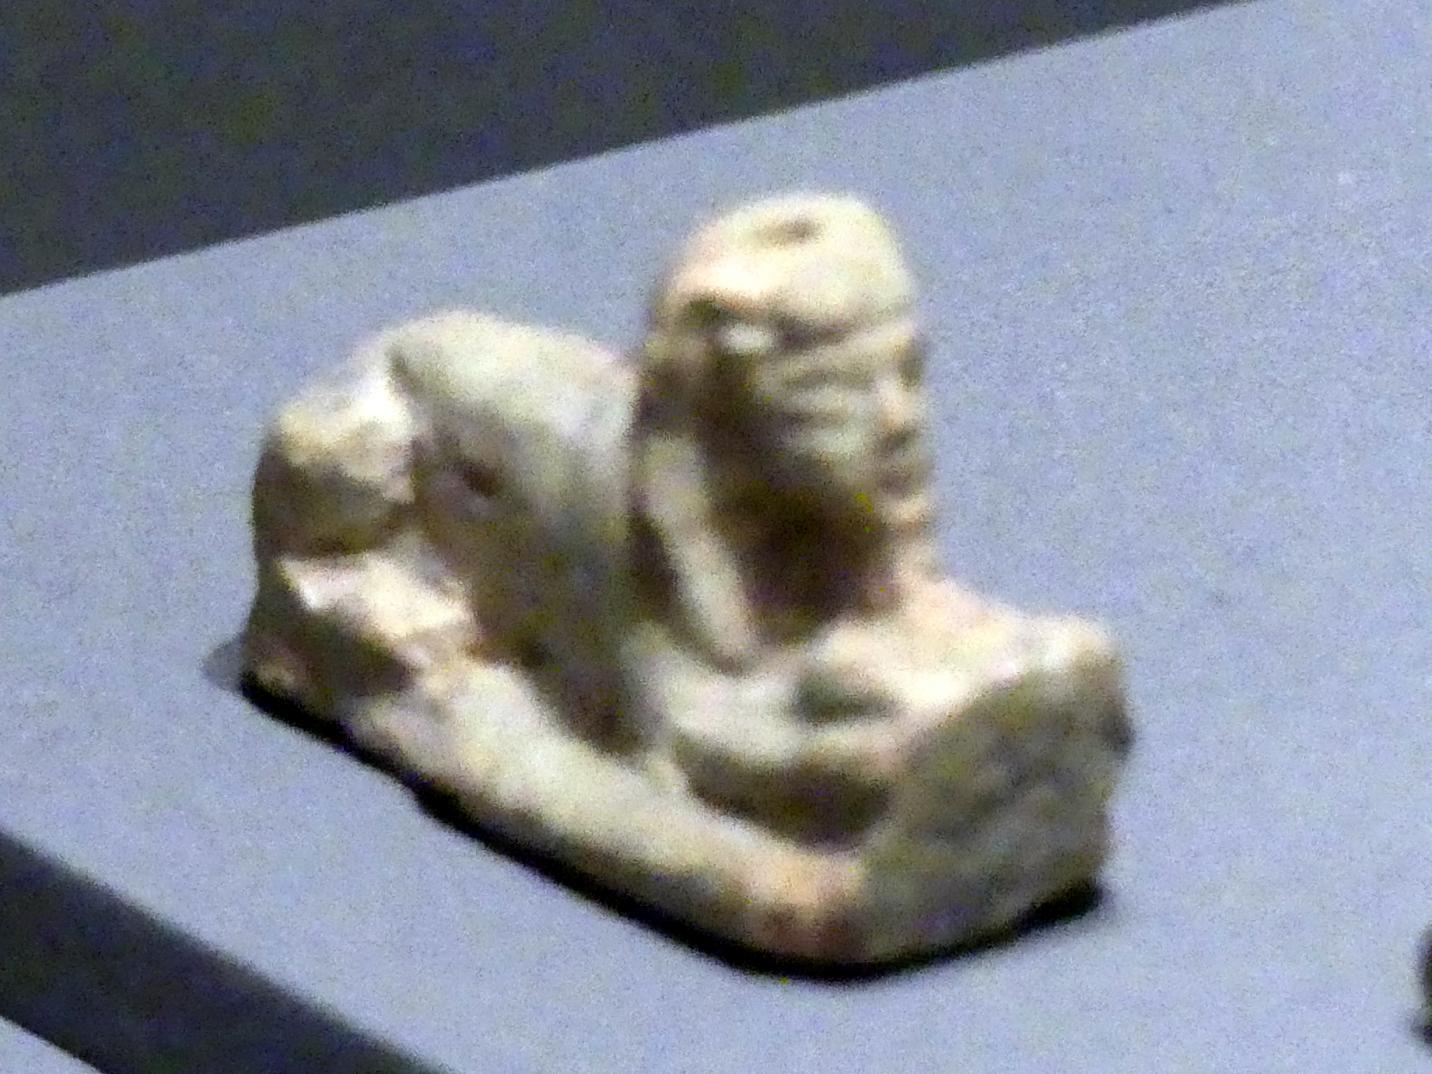 Sphinxfigur mit menschlichen Armen, Erscheinungsform des Königs, 18. Dynastie, Undatiert, 1500 - 1450 v. Chr., Bild 2/3